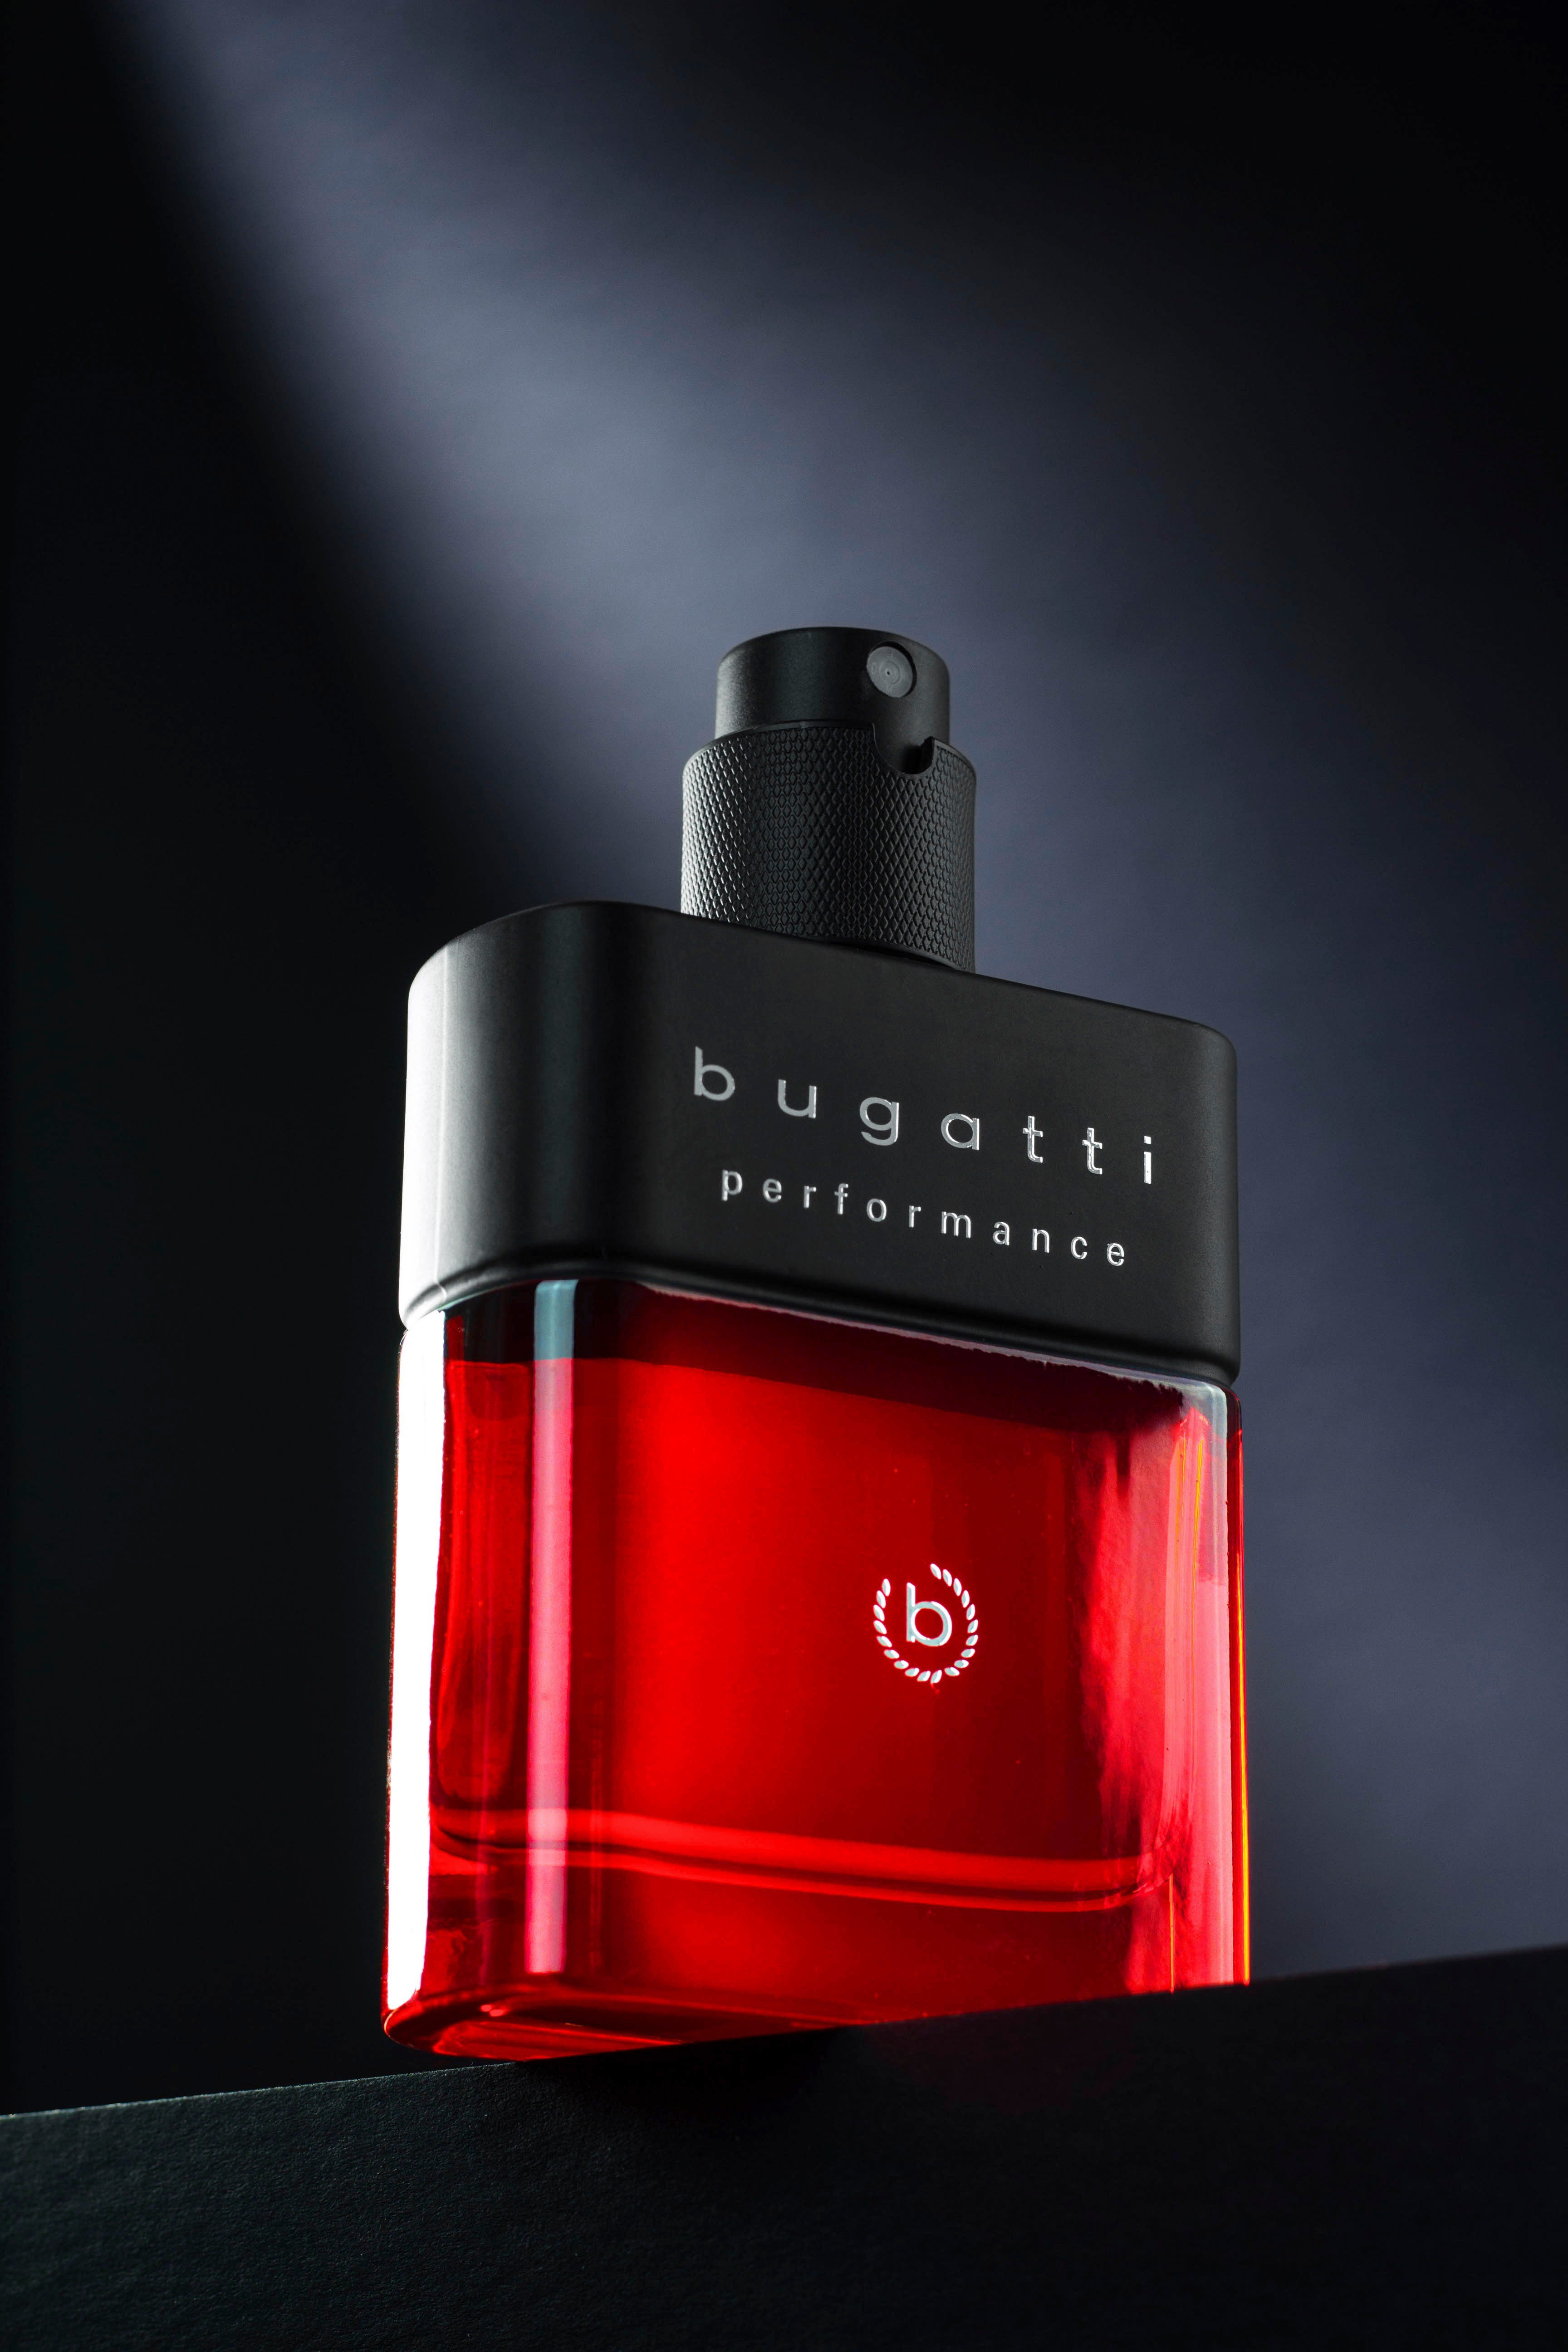 Toilette Eau 100ml de Red Performance Edition BUGATTI EdT bugatti Limited